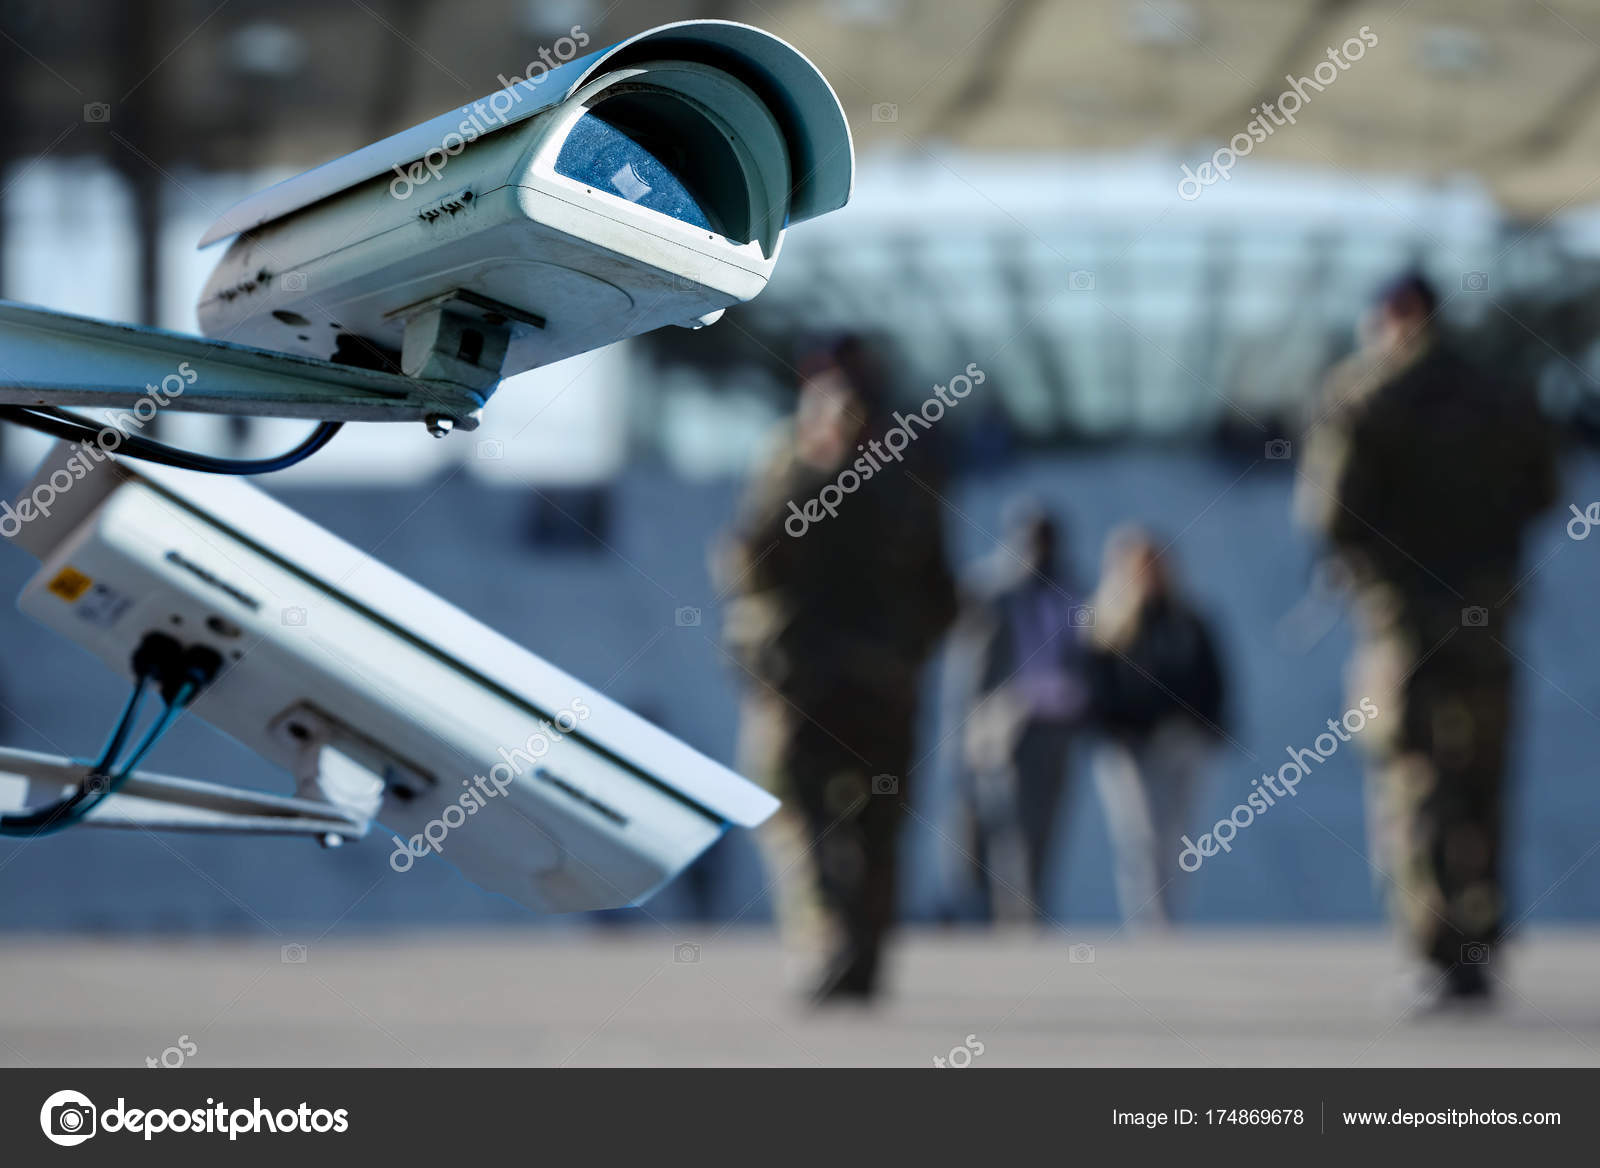 Cámara de seguridad y vídeo urbano primer plano del concepto de vigilancia  y vigilancia de cámaras cctv